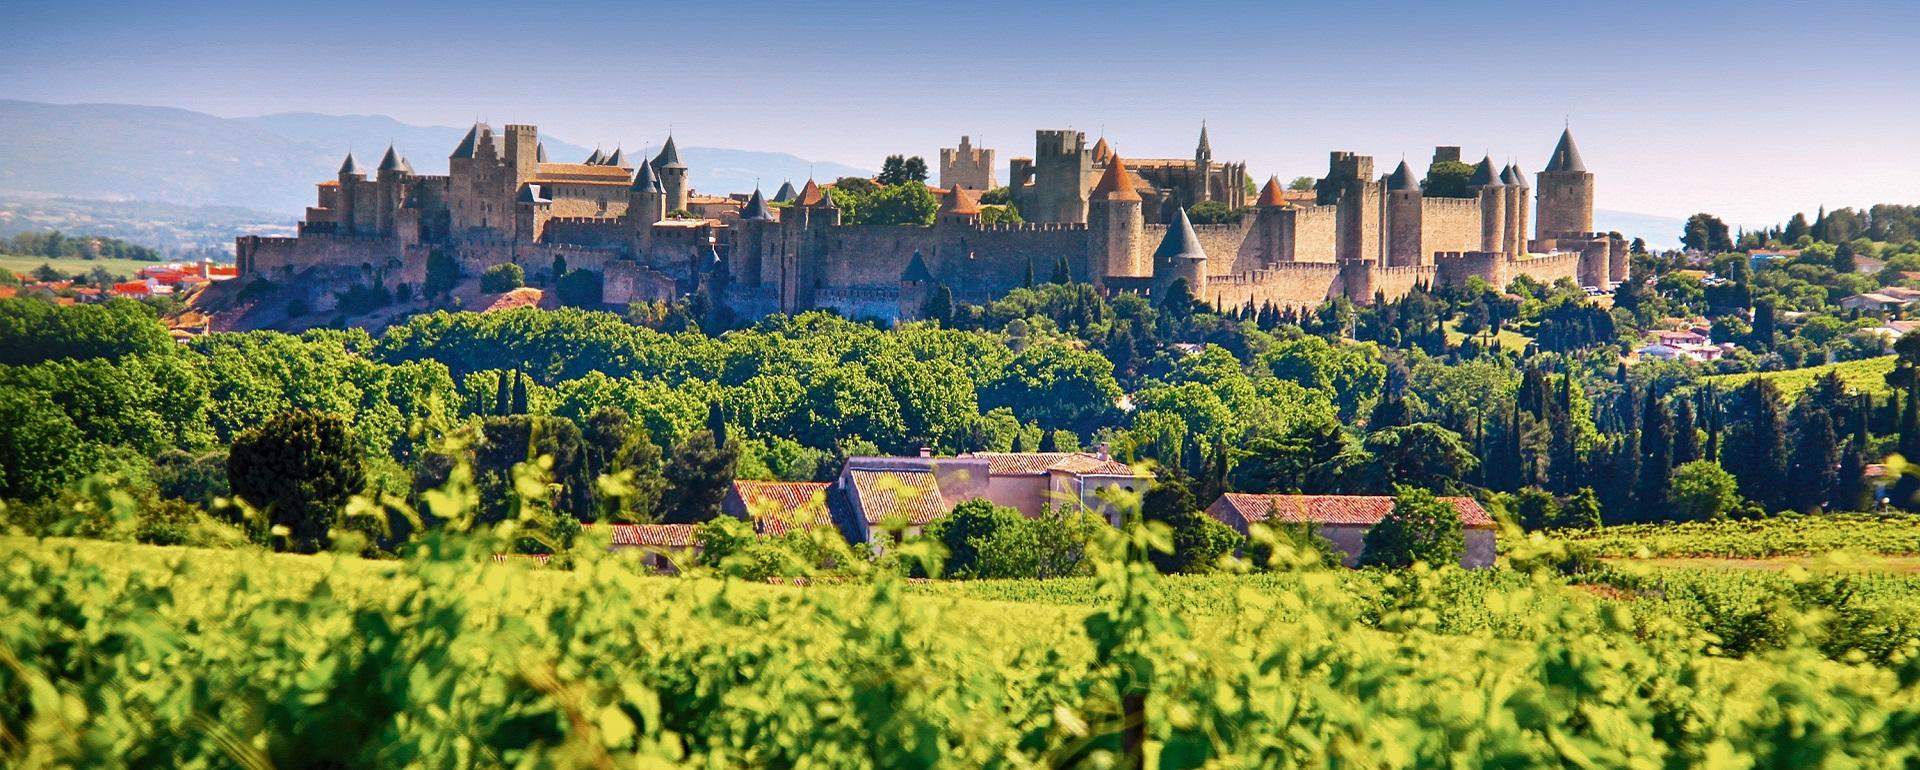 Cité médiévale de Carcassonne - UNESCO